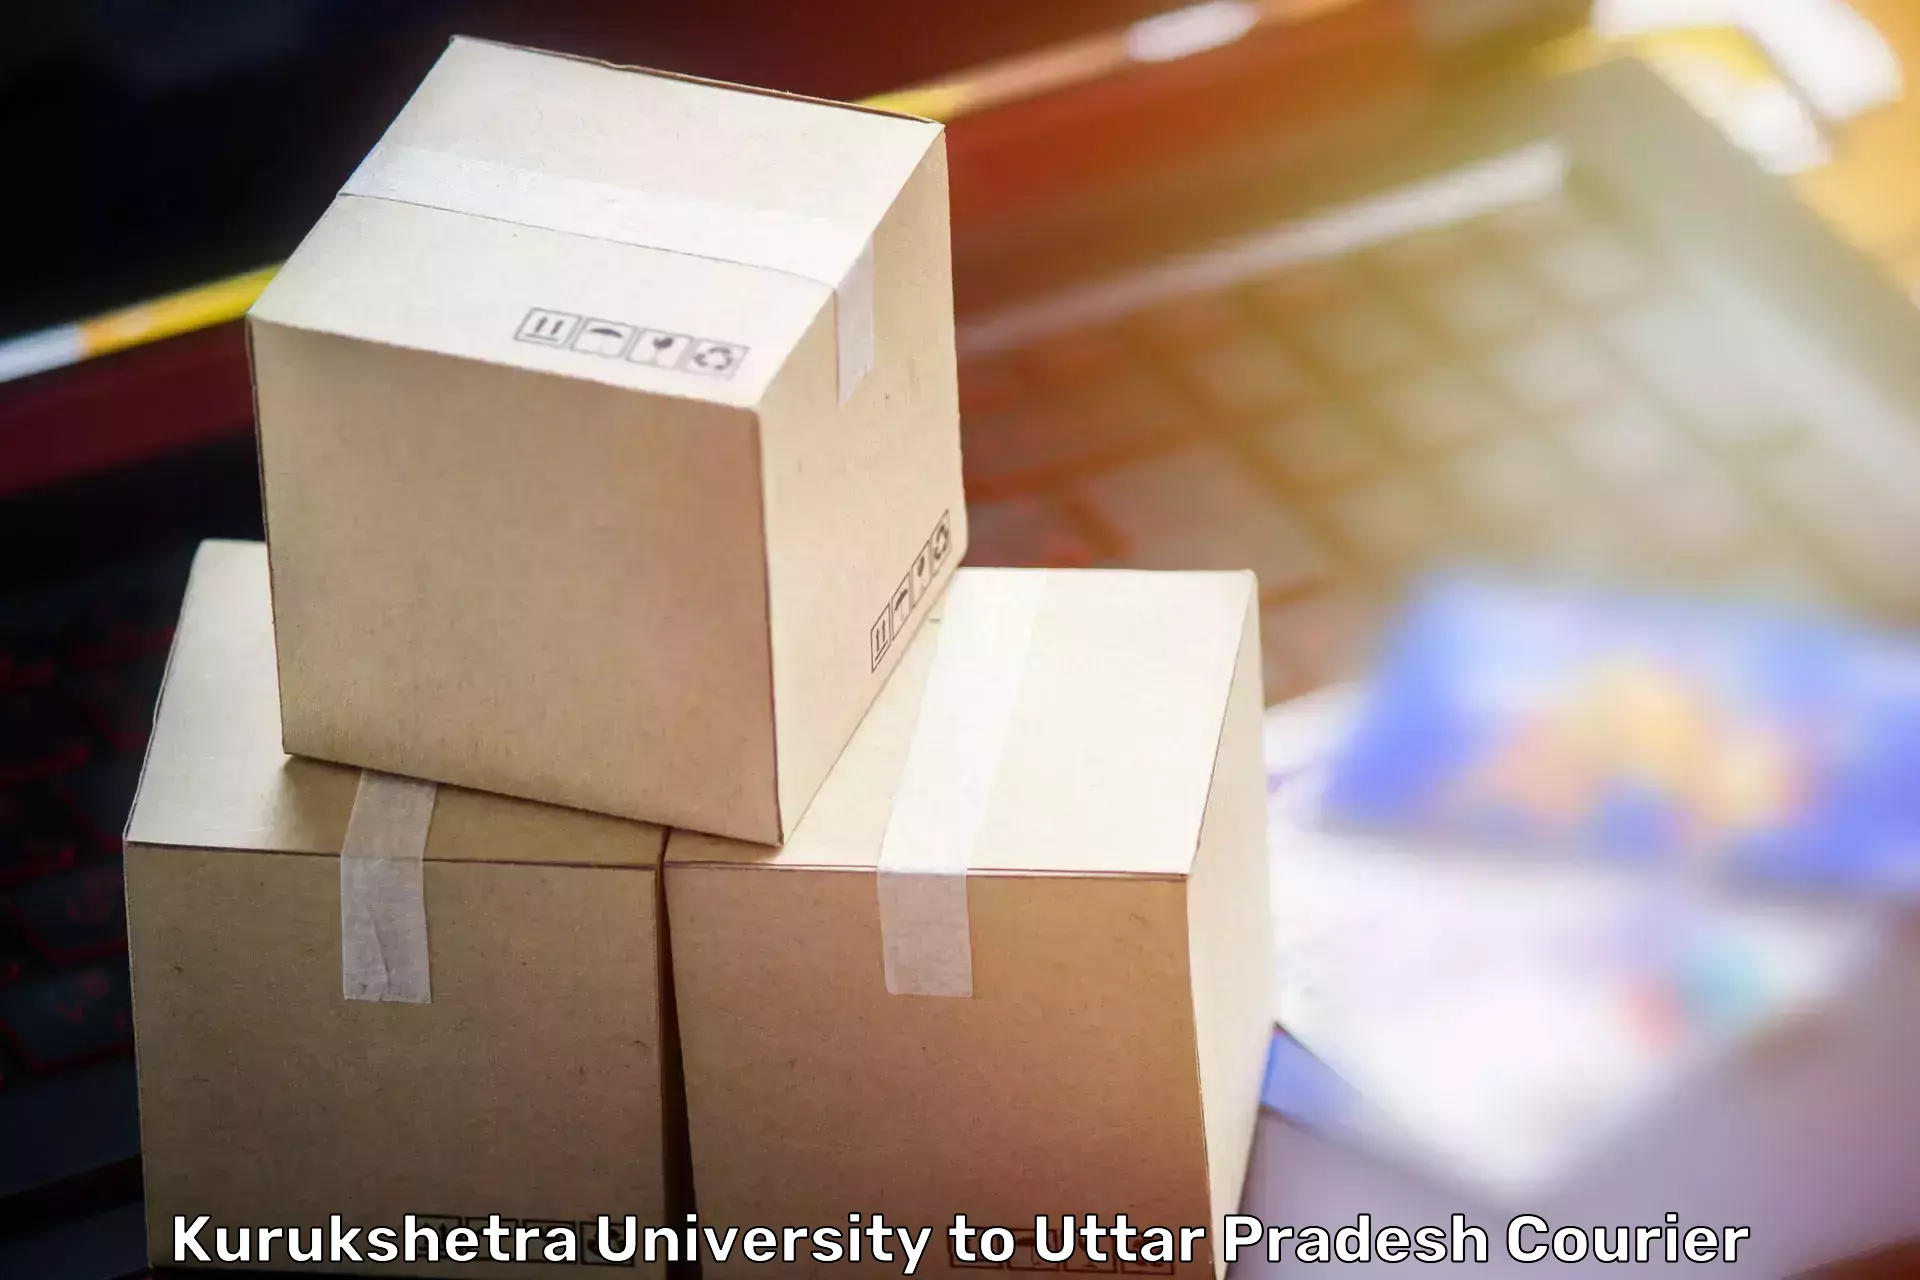 Full-service furniture transport Kurukshetra University to Sewarhi